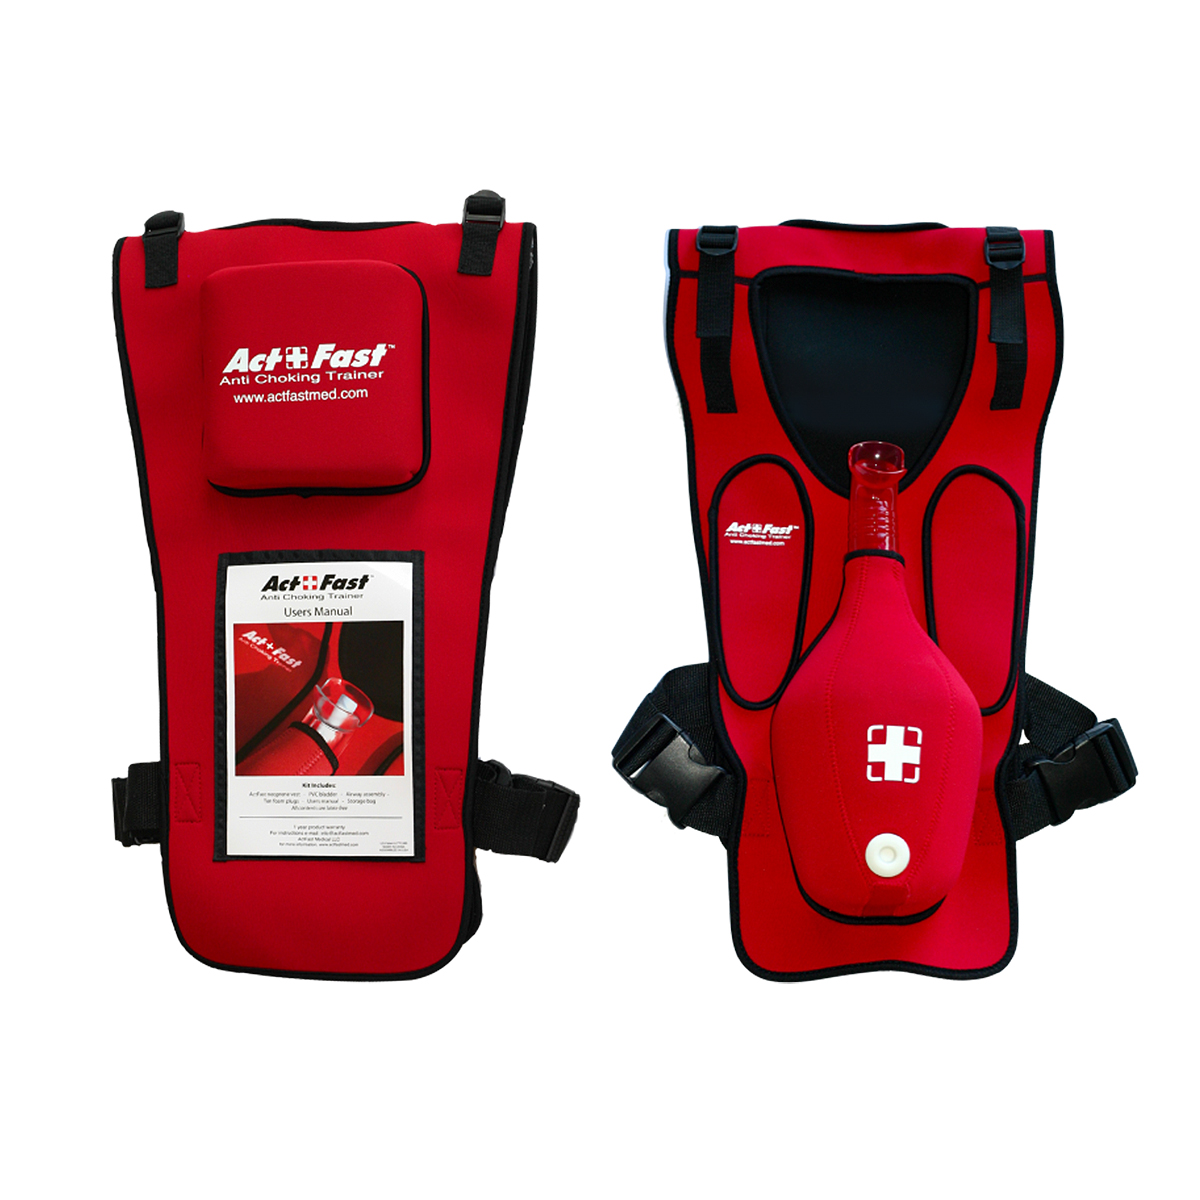 Act+Fast Rescue Choking Rettungsweste - Rot, Bestellnummer 1014589, W43300R, AF-101-R, Act Fast Medical LLC